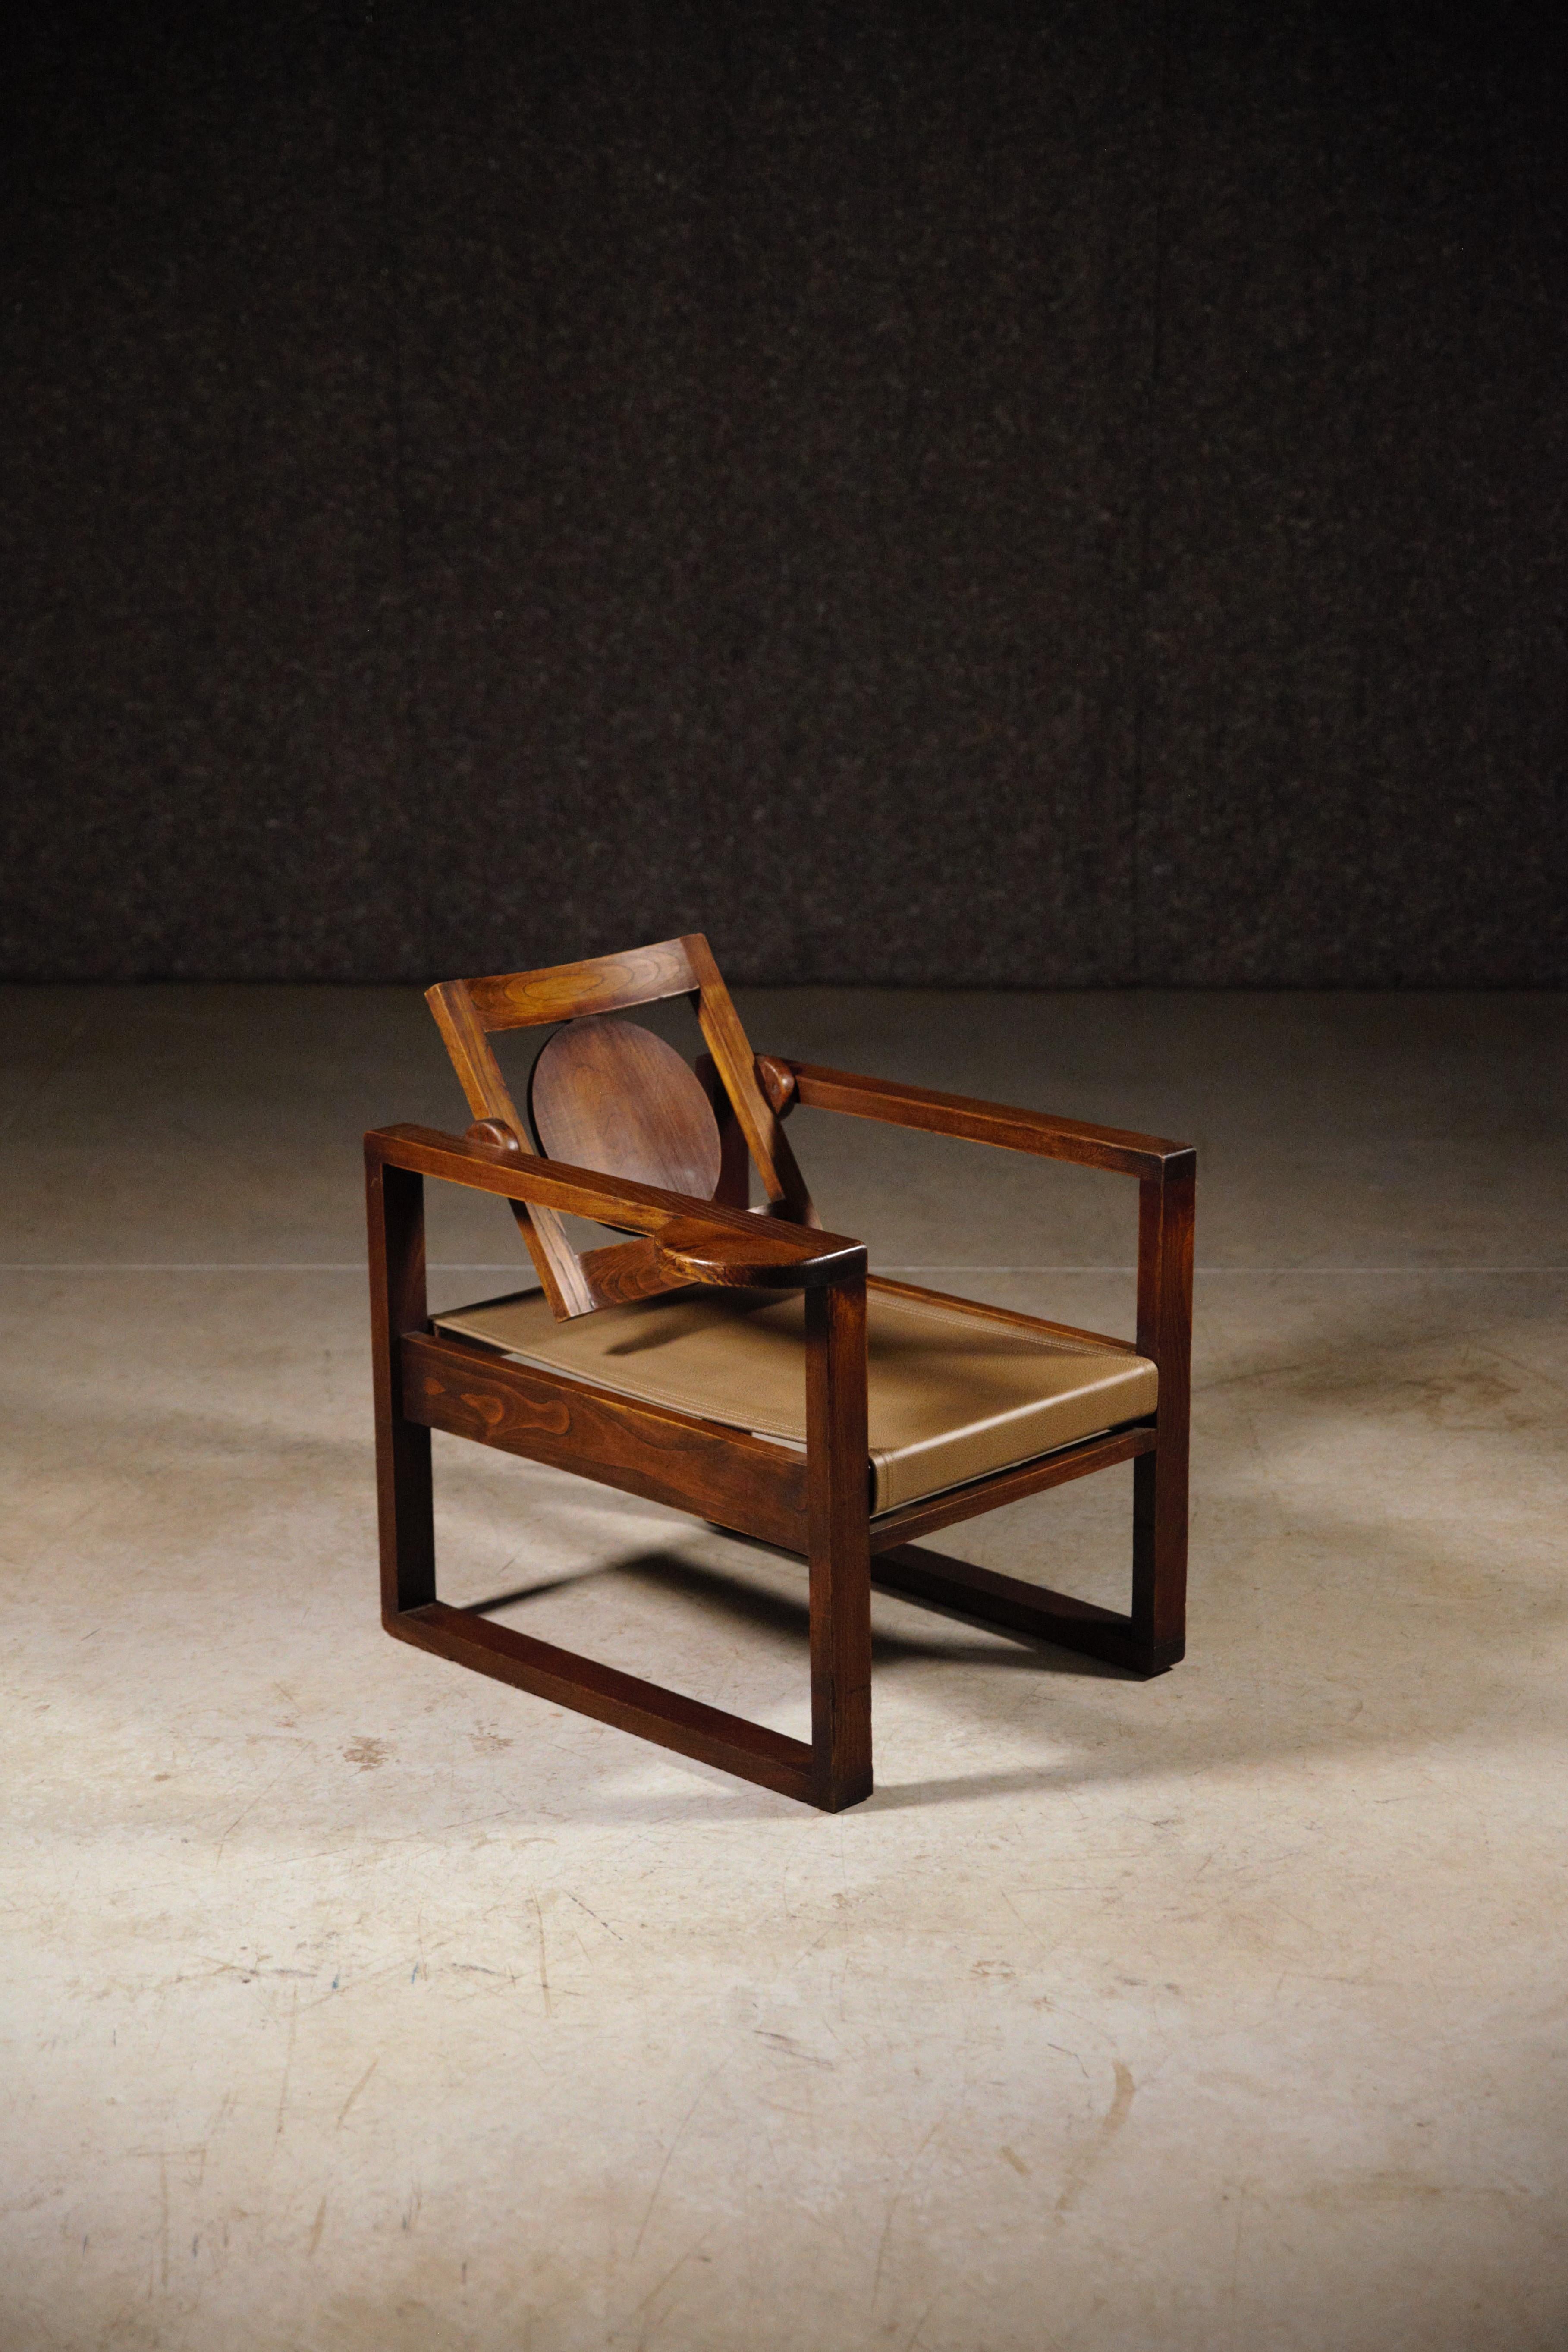 Rare paire de fauteuils modernistes de Victor Courtray.

Le cuir est neuf.

En parfait état.

1930 / 40s